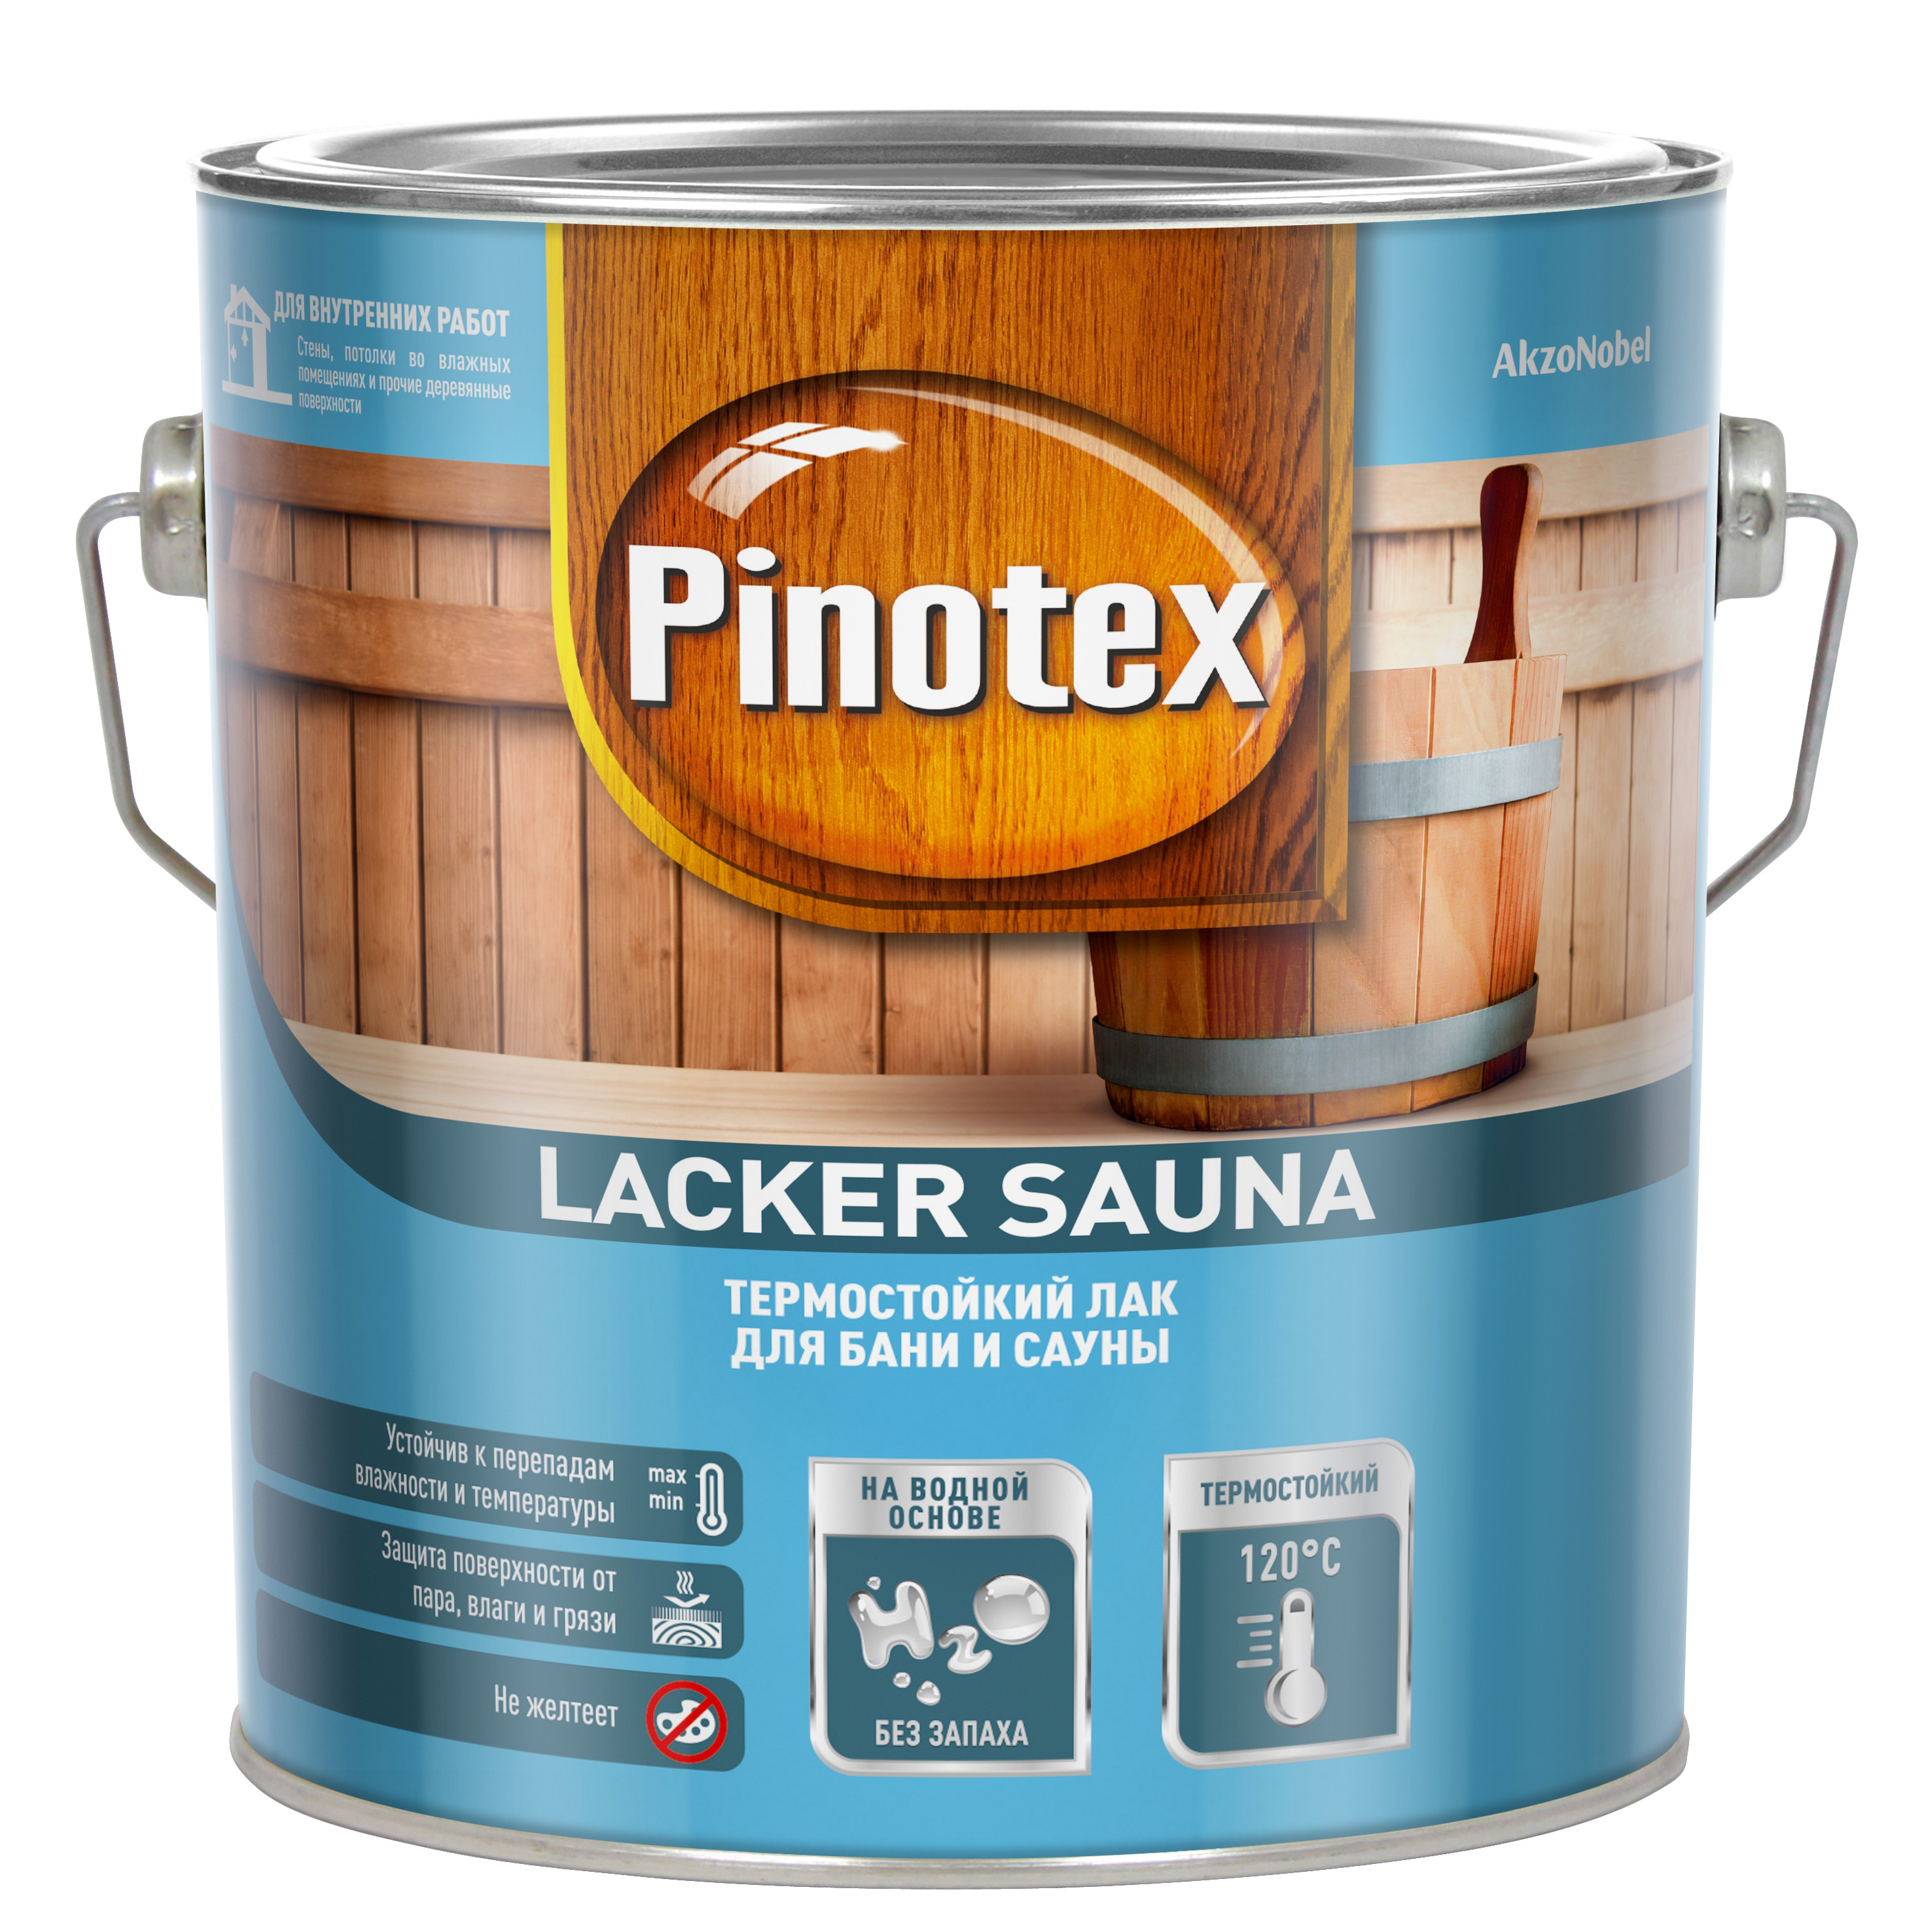 Купить лак для стен. Лак Пинотекс Аква. Лак Pinotex Aqua. Лак для мебели и стен Pinotex Lacker Aqua 10. Pinotex Lacker Aqua 2,7л.